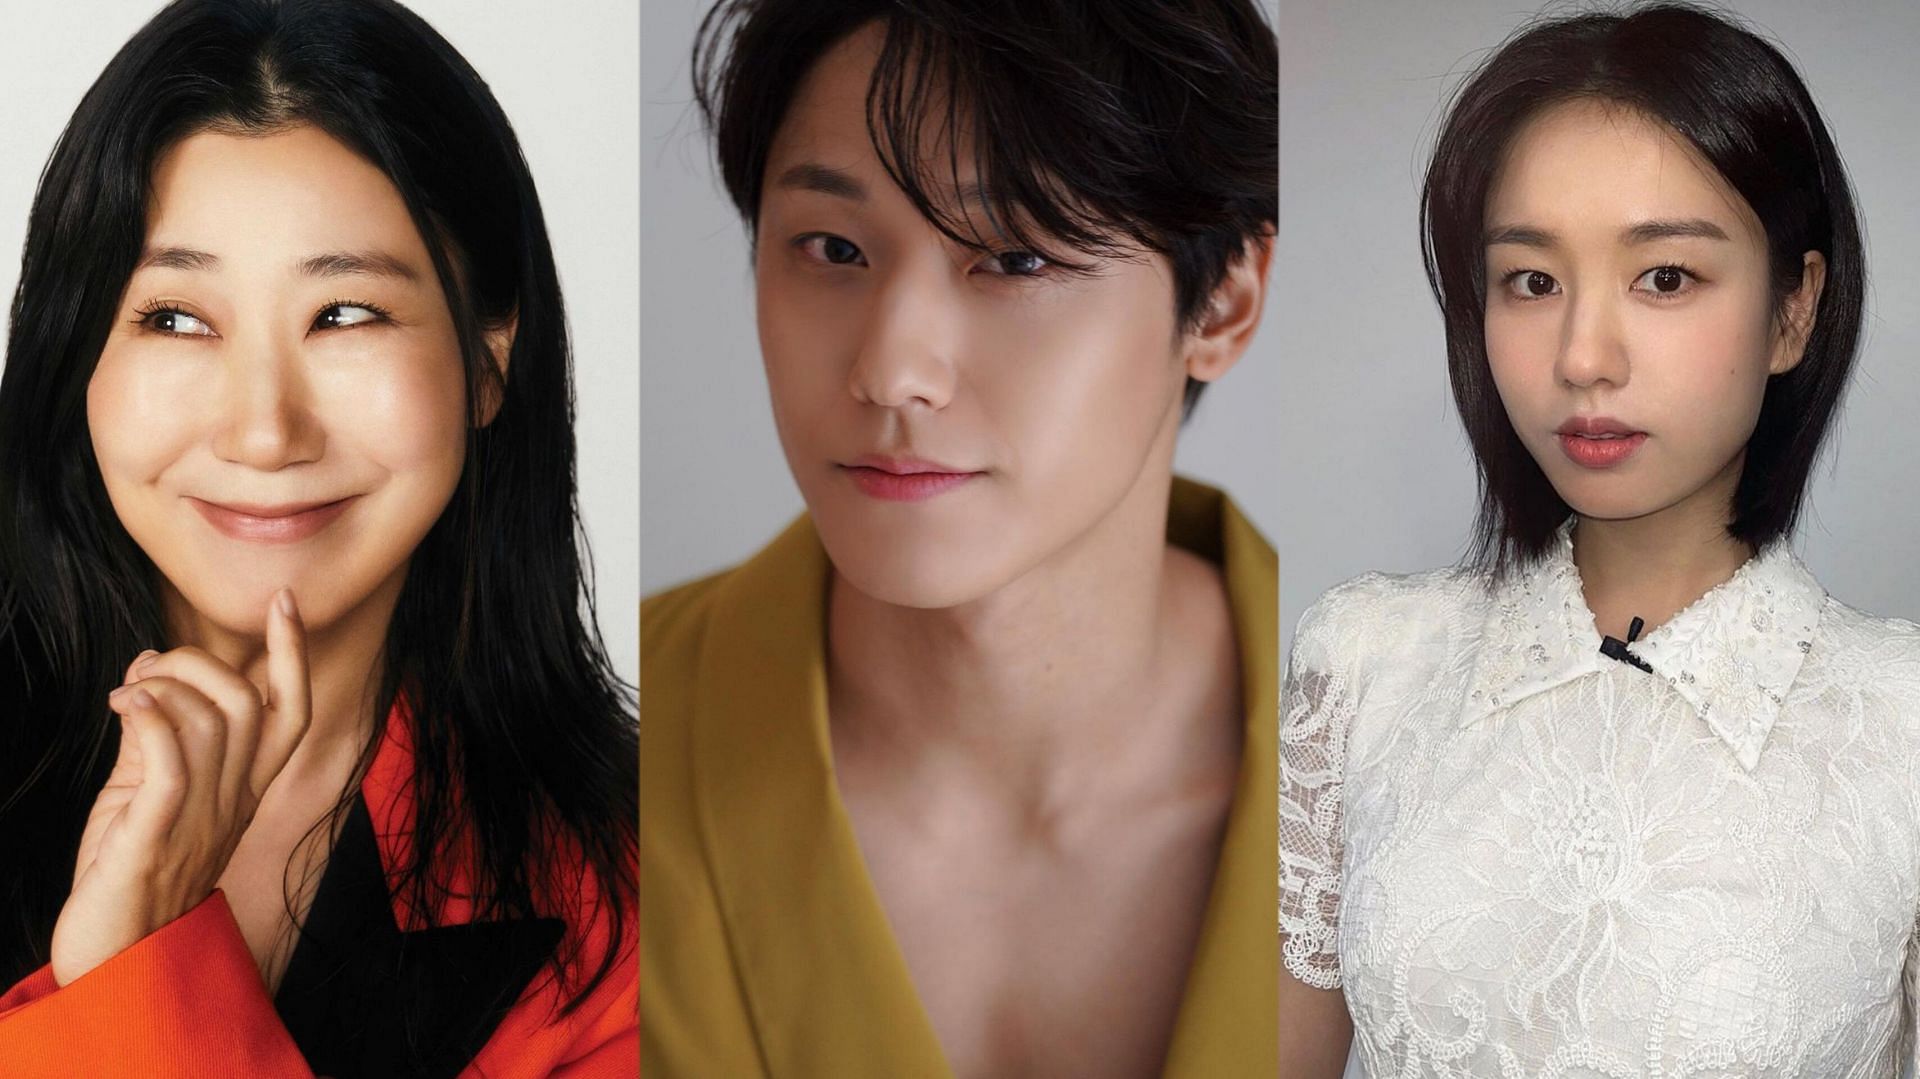 Featuring Ra Mi-ran, Lee Do-hyun, and Ahn Eun-ji (Image via ramirani668, idh_sky, and eunjin__a Instagram)